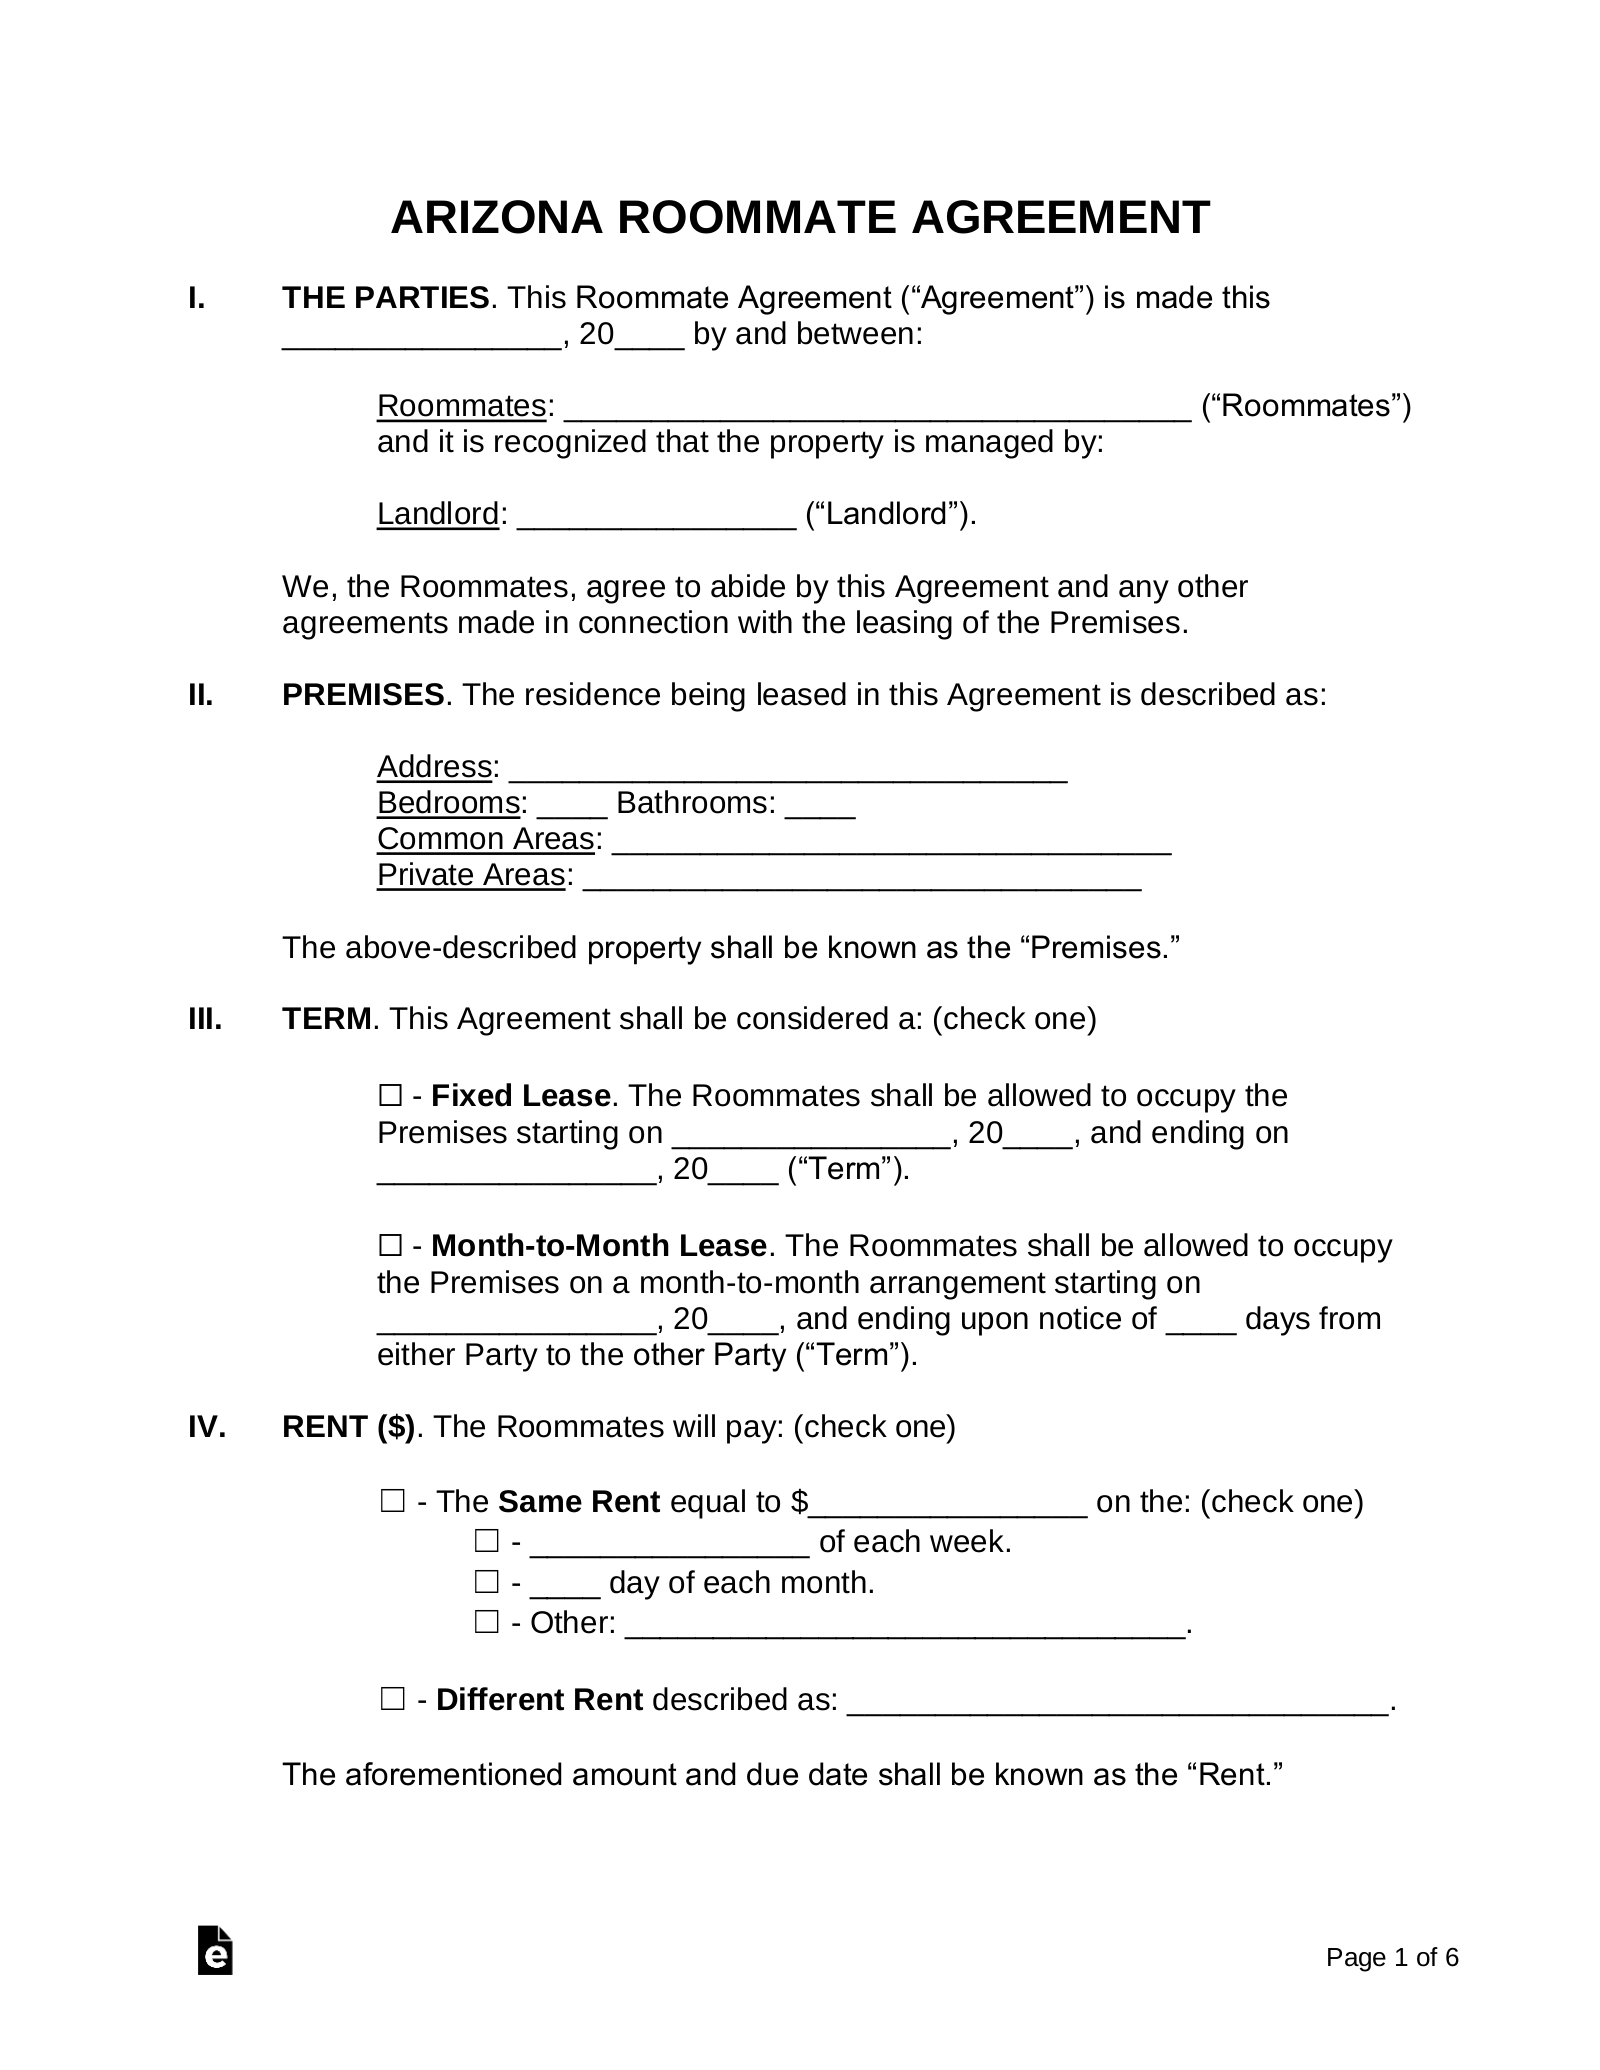 Free Arizona Room Rental (Roommate) Agreement Template PDF Word